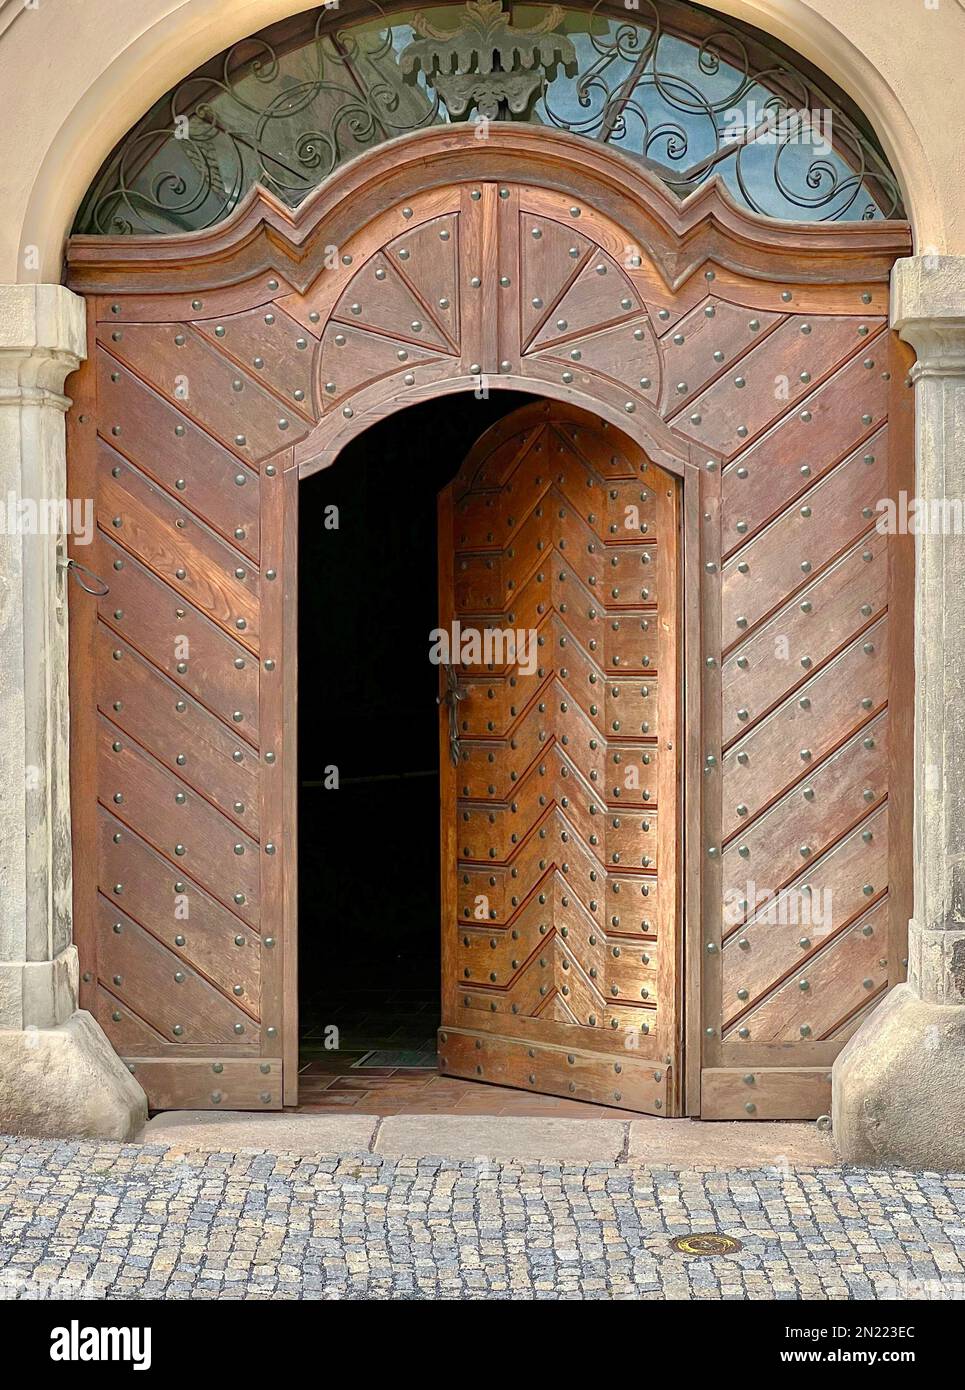 Große Nagelköpfe schmücken die abgeschrägten Holzpaneele an dieser historischen Tür in Kutna Hora, Tschechien. Türverkleidungen aus Metall sind in dieser silbernen Stadt. Stockfoto